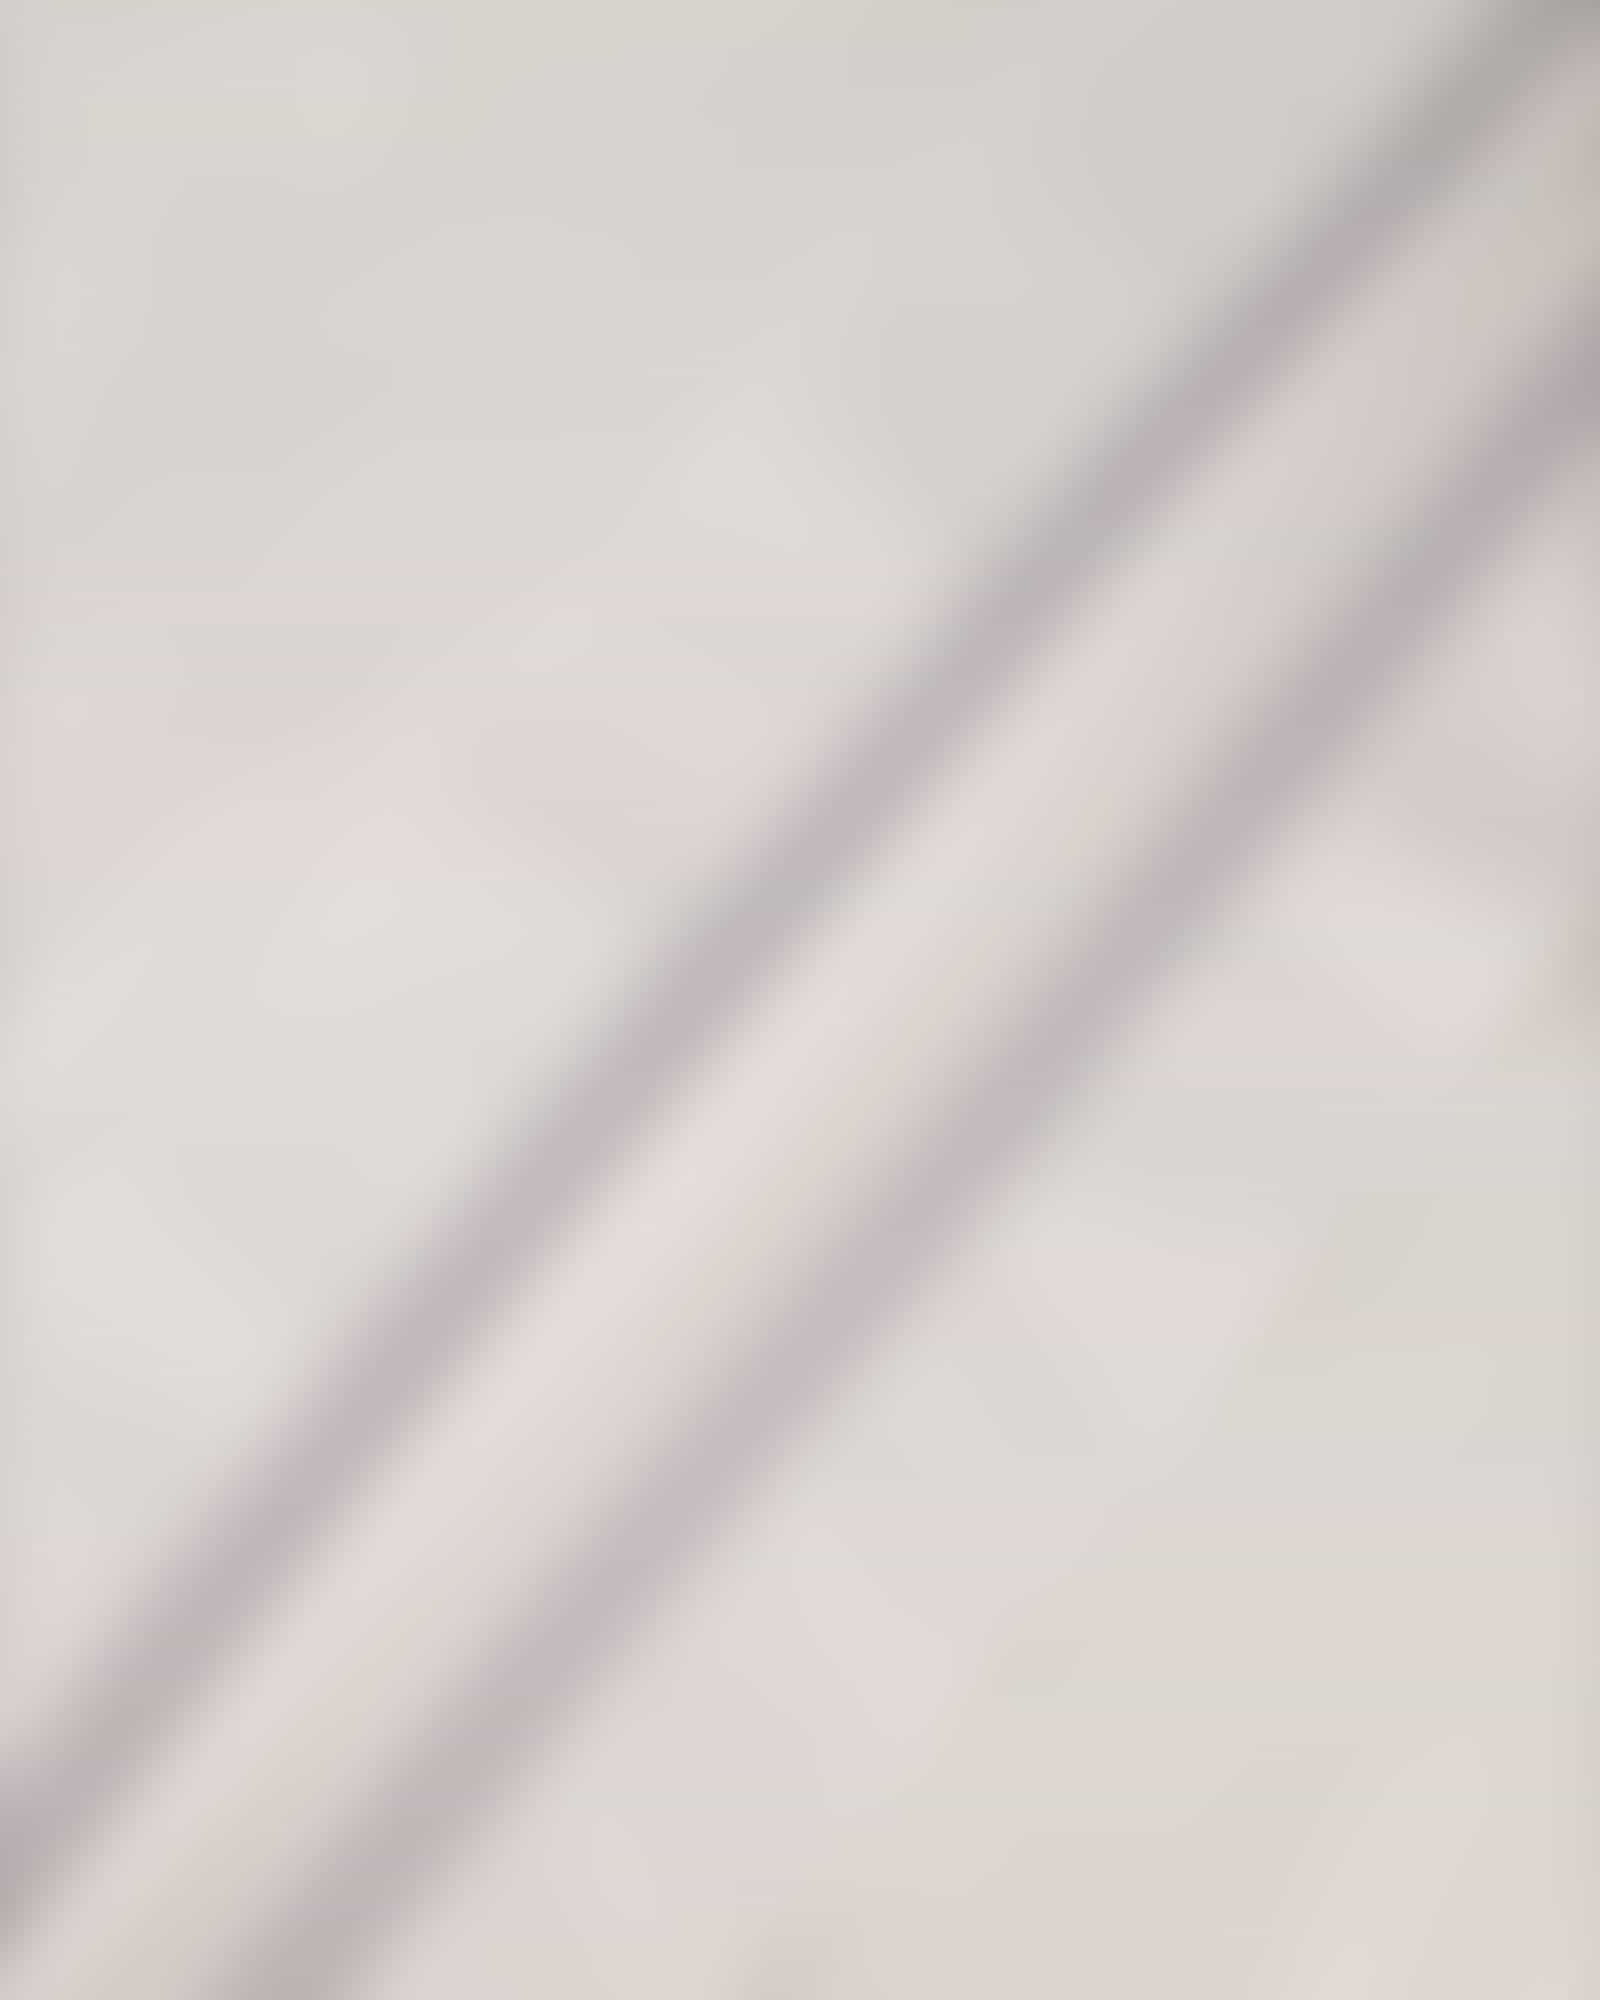 JOOP Herren Bademantel Kimono Pique 1656 - Farbe: Weiß - 600